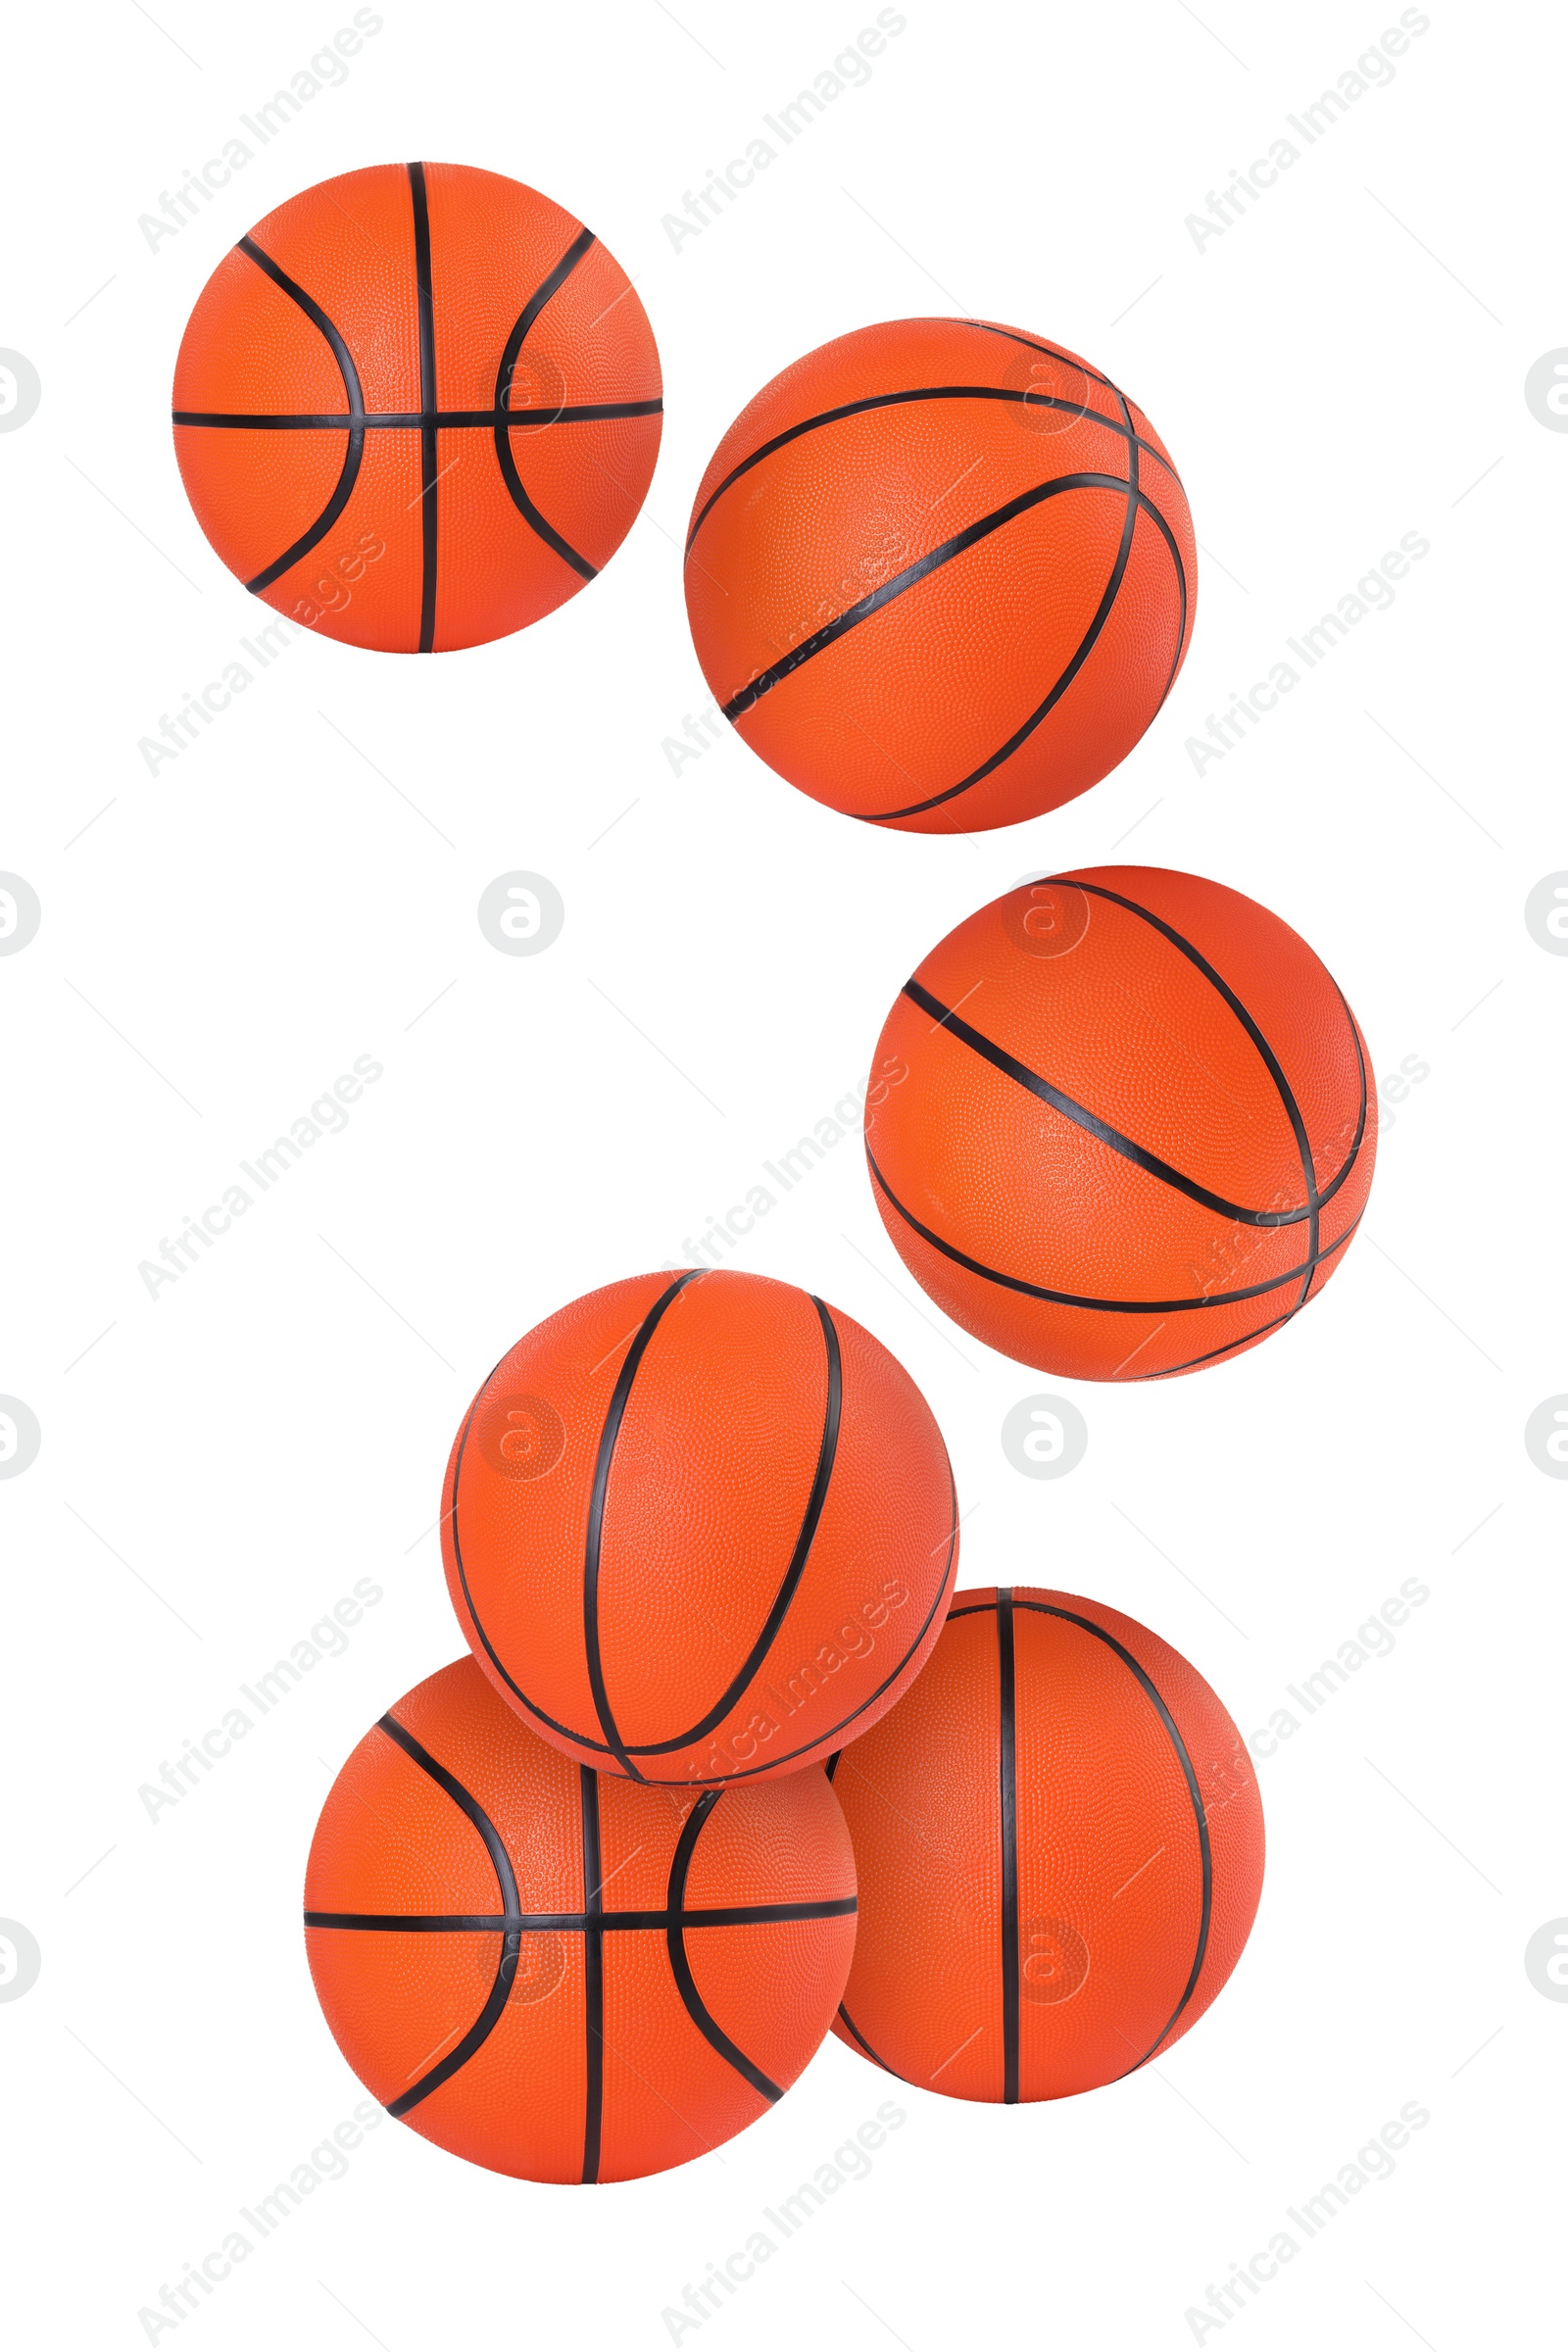 Image of Many basketball balls flying on white background